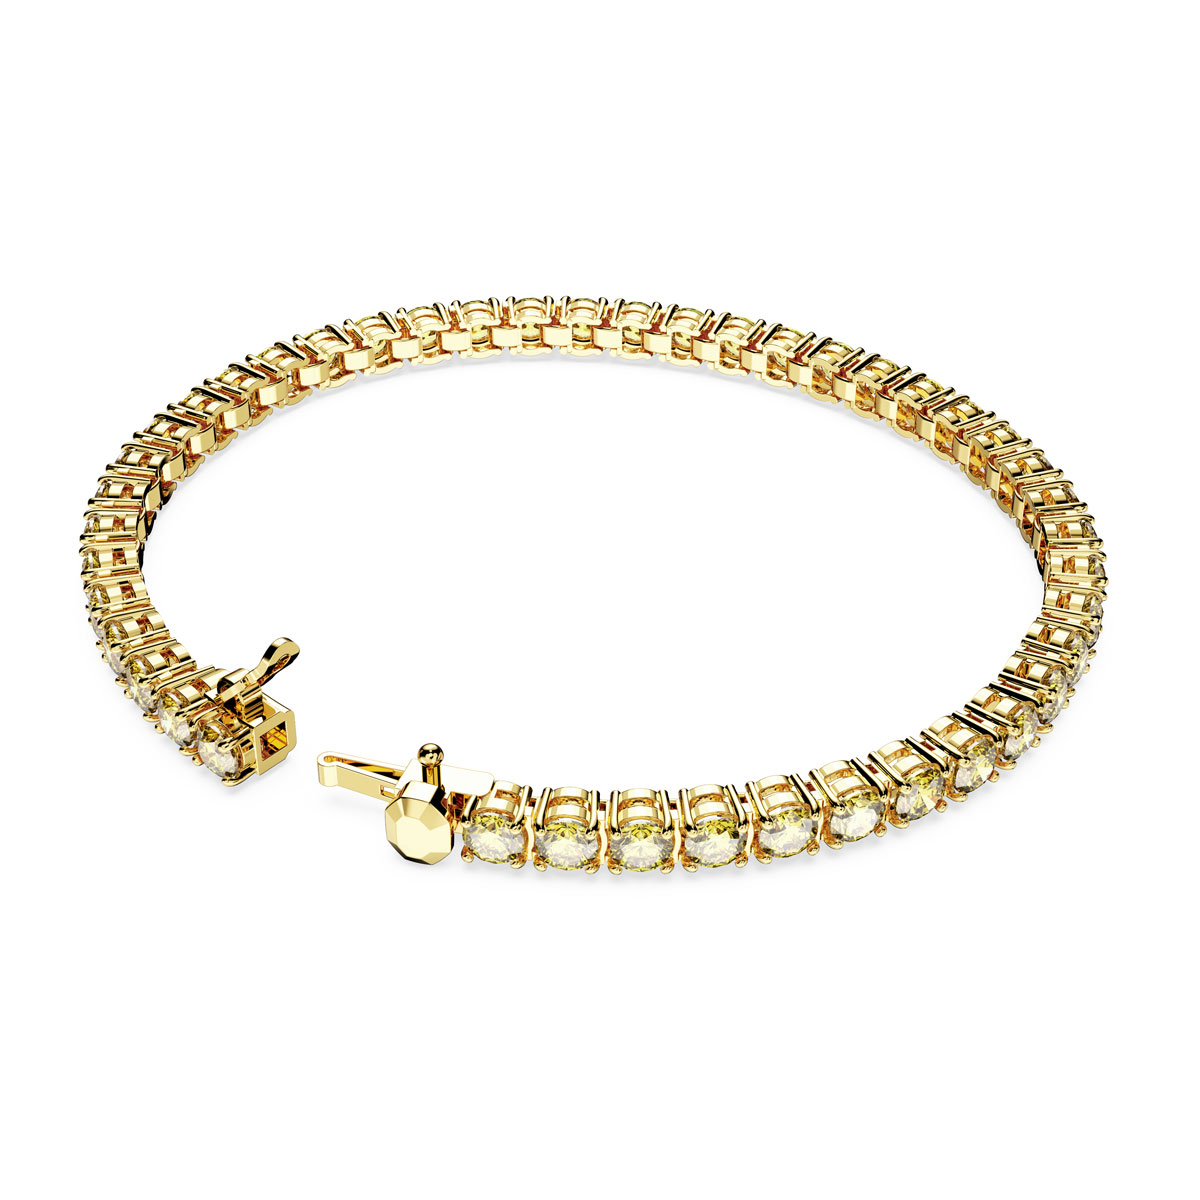 Swarovski Jewelry Bracelet Matrix, Yellow, Gold XL